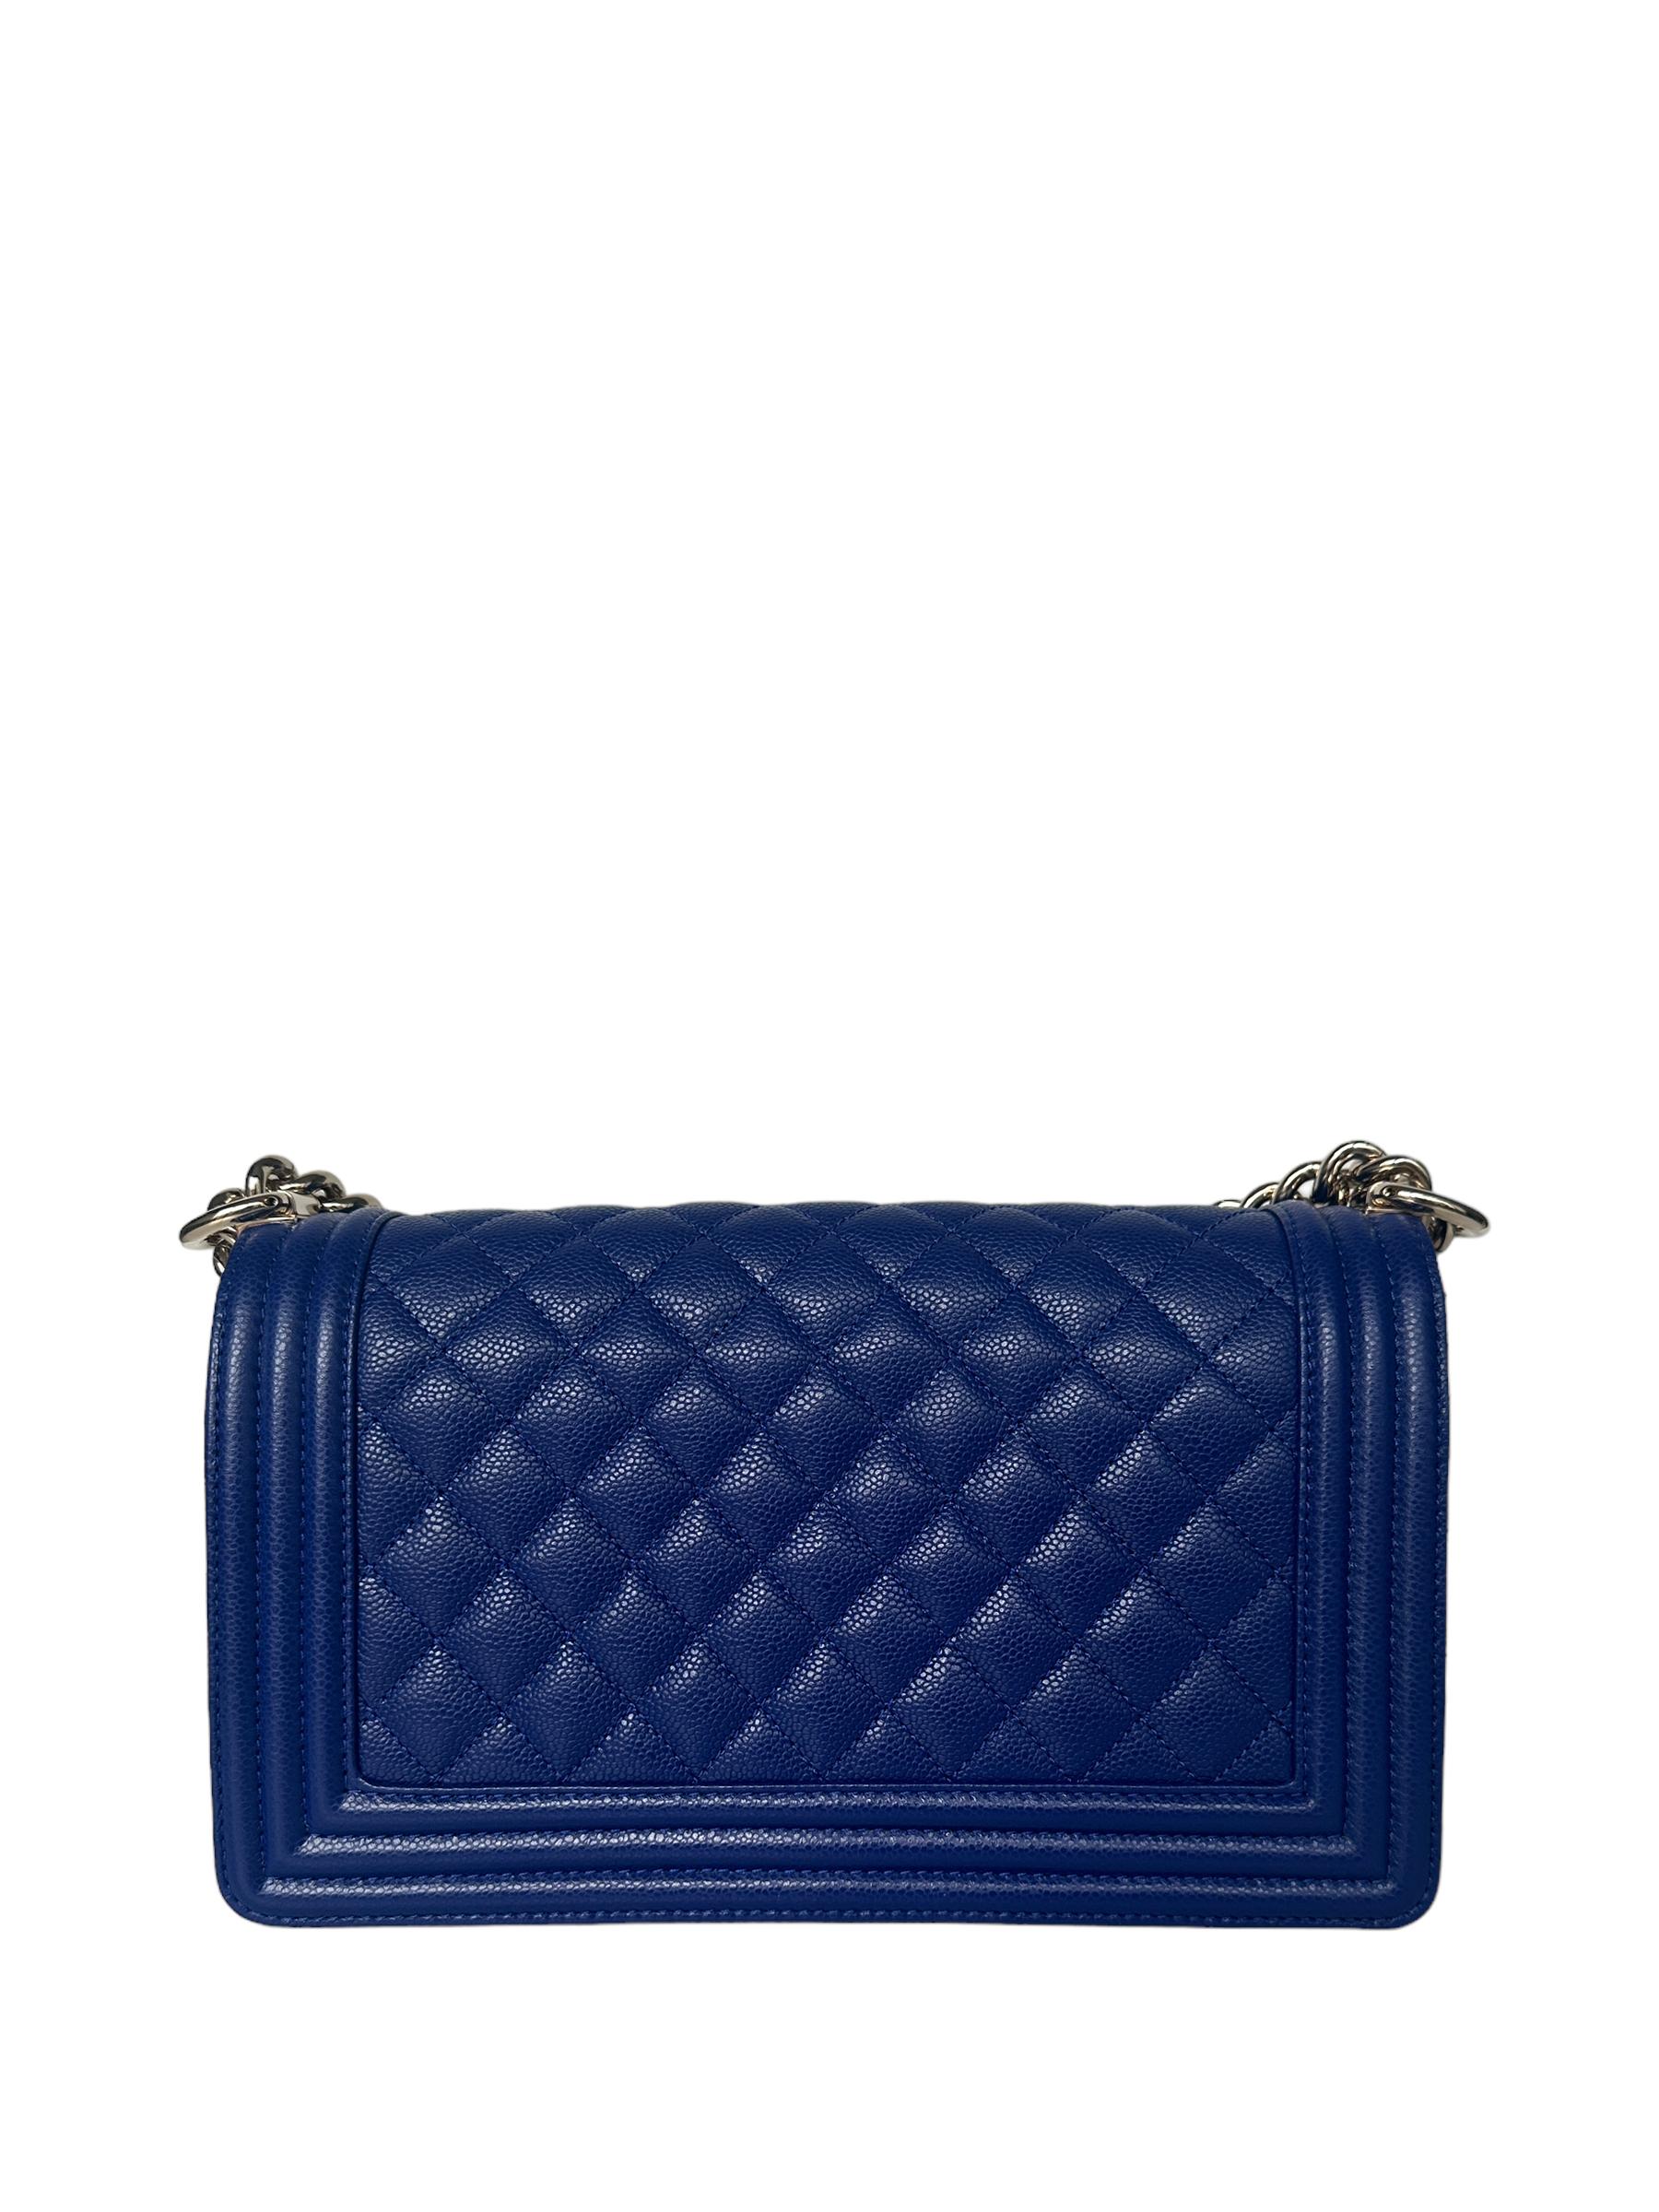 Chanel NEU Kobaltblaue gesteppte Medium Boy Bag aus Leder in Kaviar   

Hergestellt in: Italien
Farbe: Blau
Hardware: Blasser Goldton
MATERIALIEN: Kaviar-Leder
Innenfutter: Leder
Verschluss/Öffnung: Klappe oben mit Druckverschluss
Äußere Taschen: